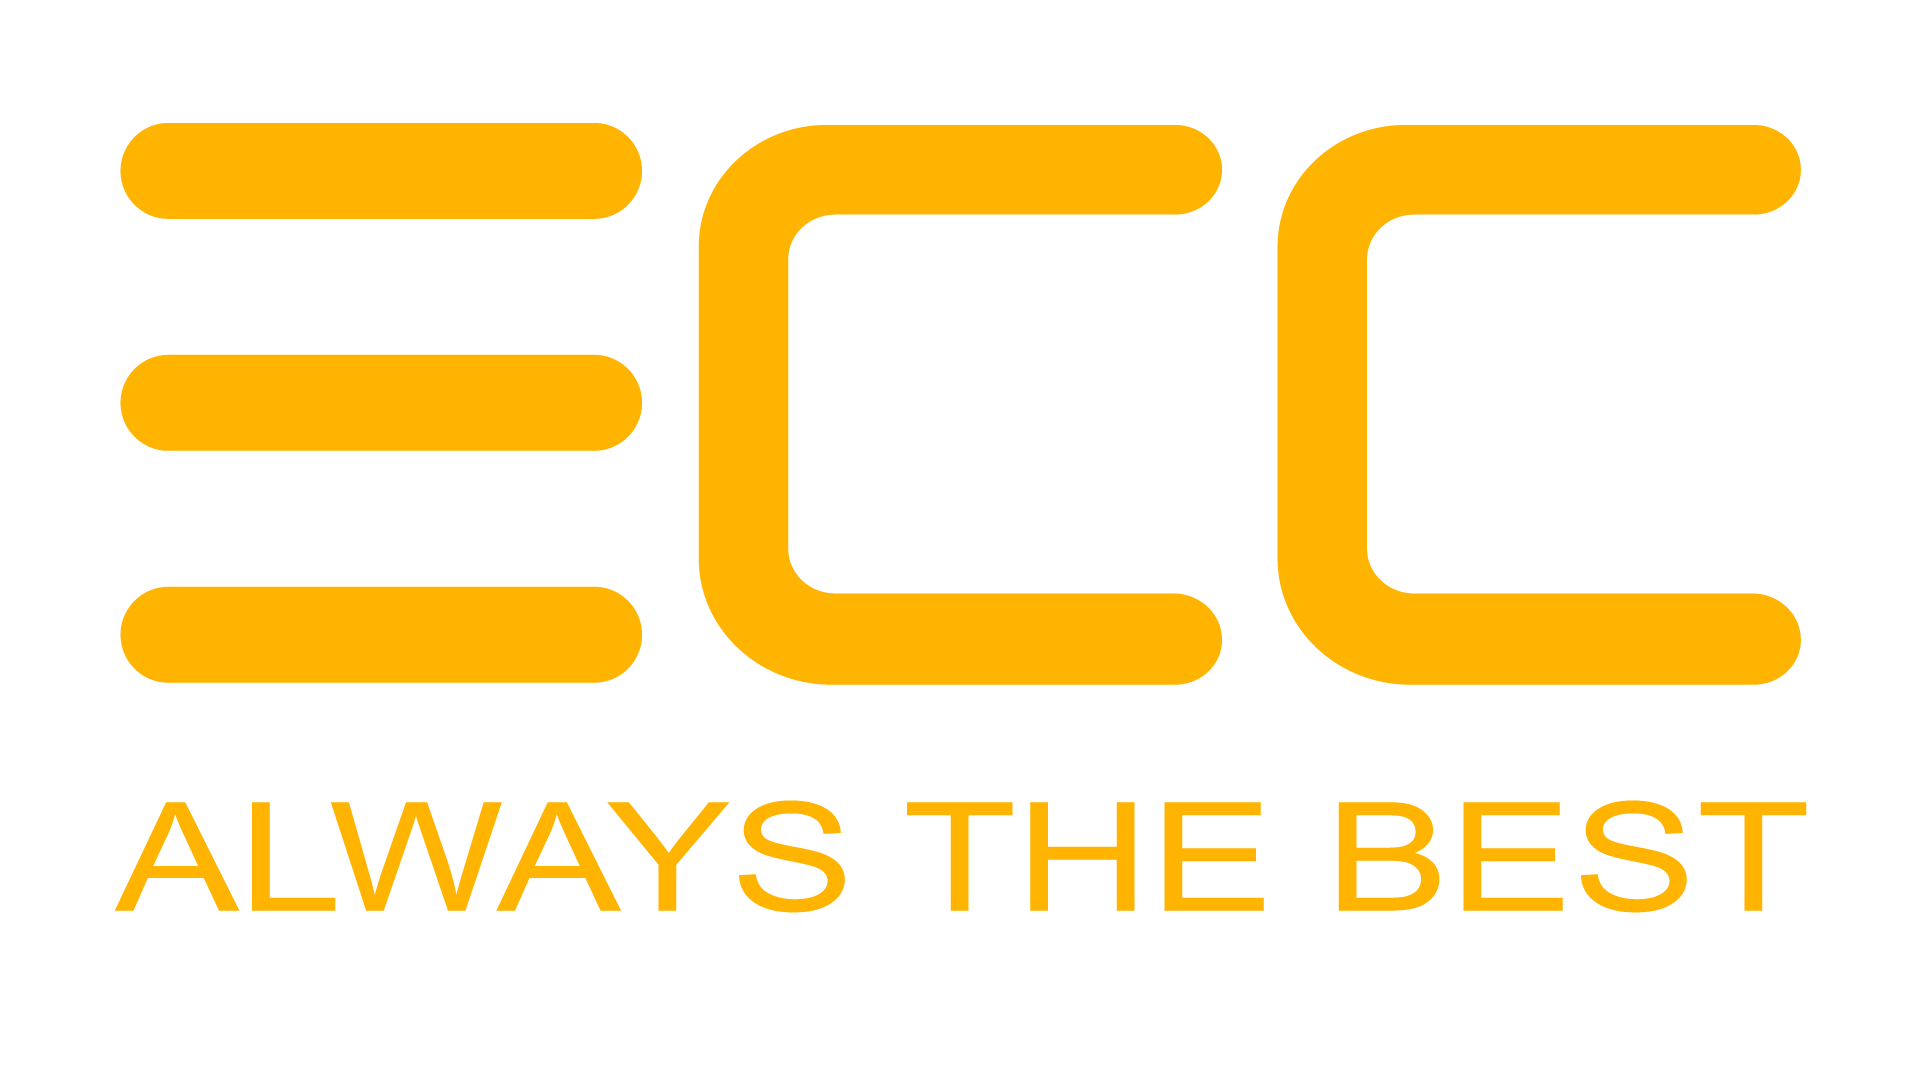 ECC Makine - ECC Kurulum Makina Mühendislik Hizmetleri İnşaat Sanayi ve Ticaret Limited Şirketi